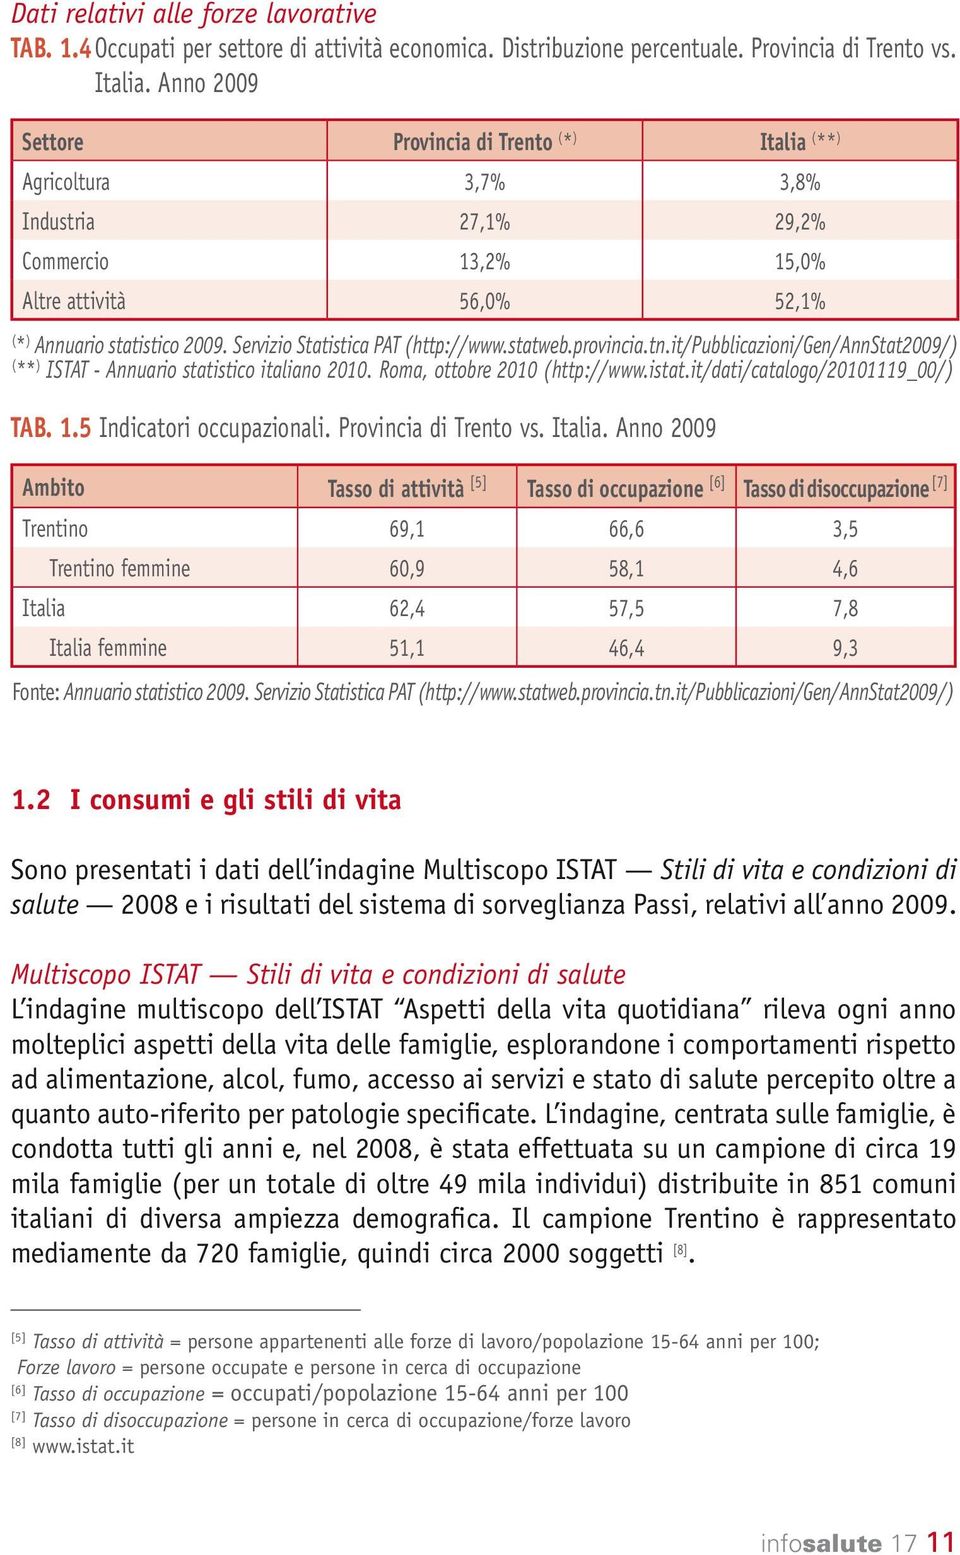 Servizio Statistica PAT (http://www.statweb.provincia.tn.it/pubblicazioni/gen/annstat2009/) ( ** ) ISTAT - Annuario statistico italiano 2010. Roma, ottobre 2010 (http://www.istat.